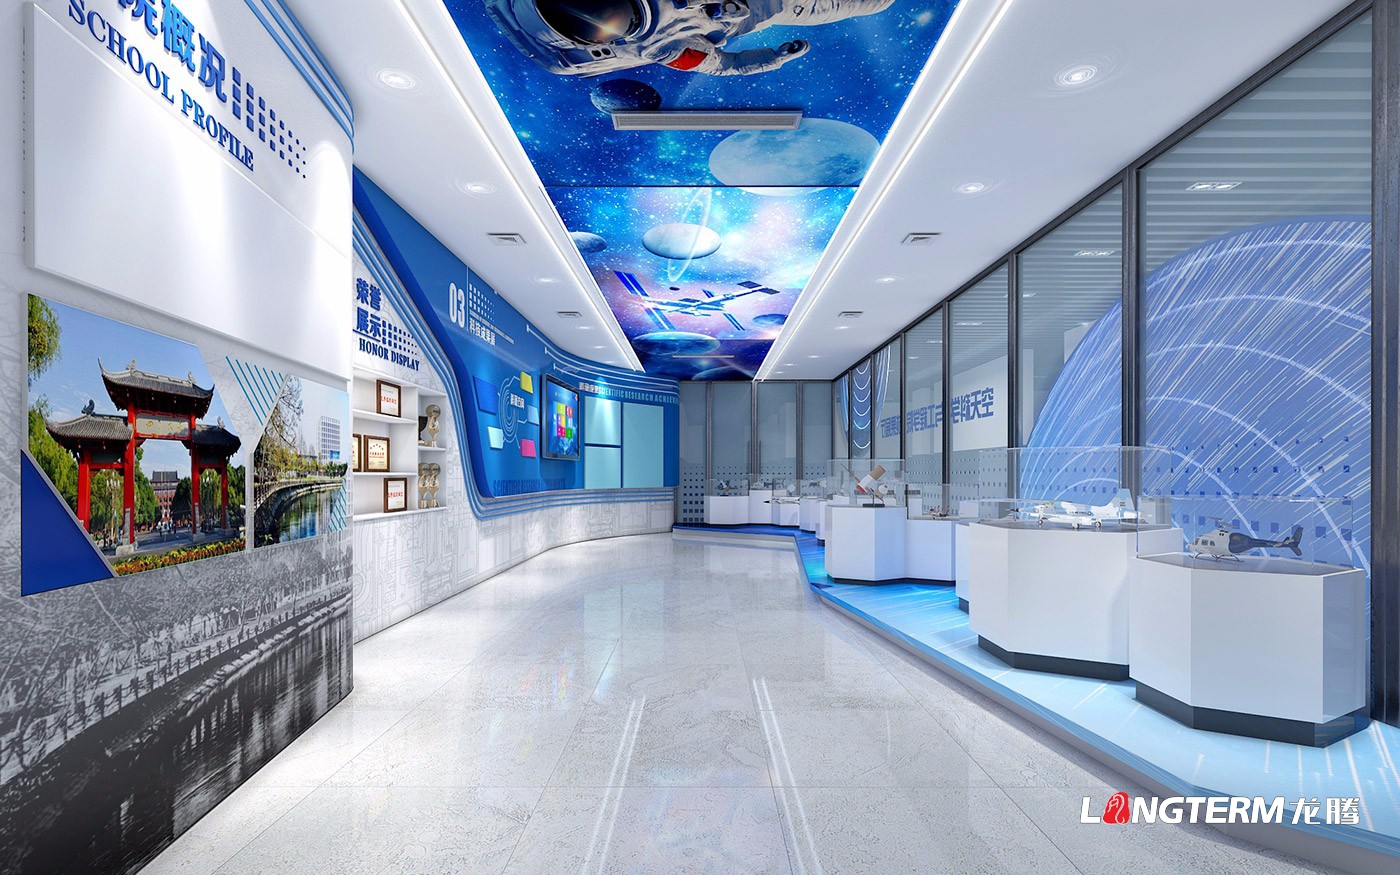 四川大学空天科学与工程学院效果展厅策划设计与施工制作